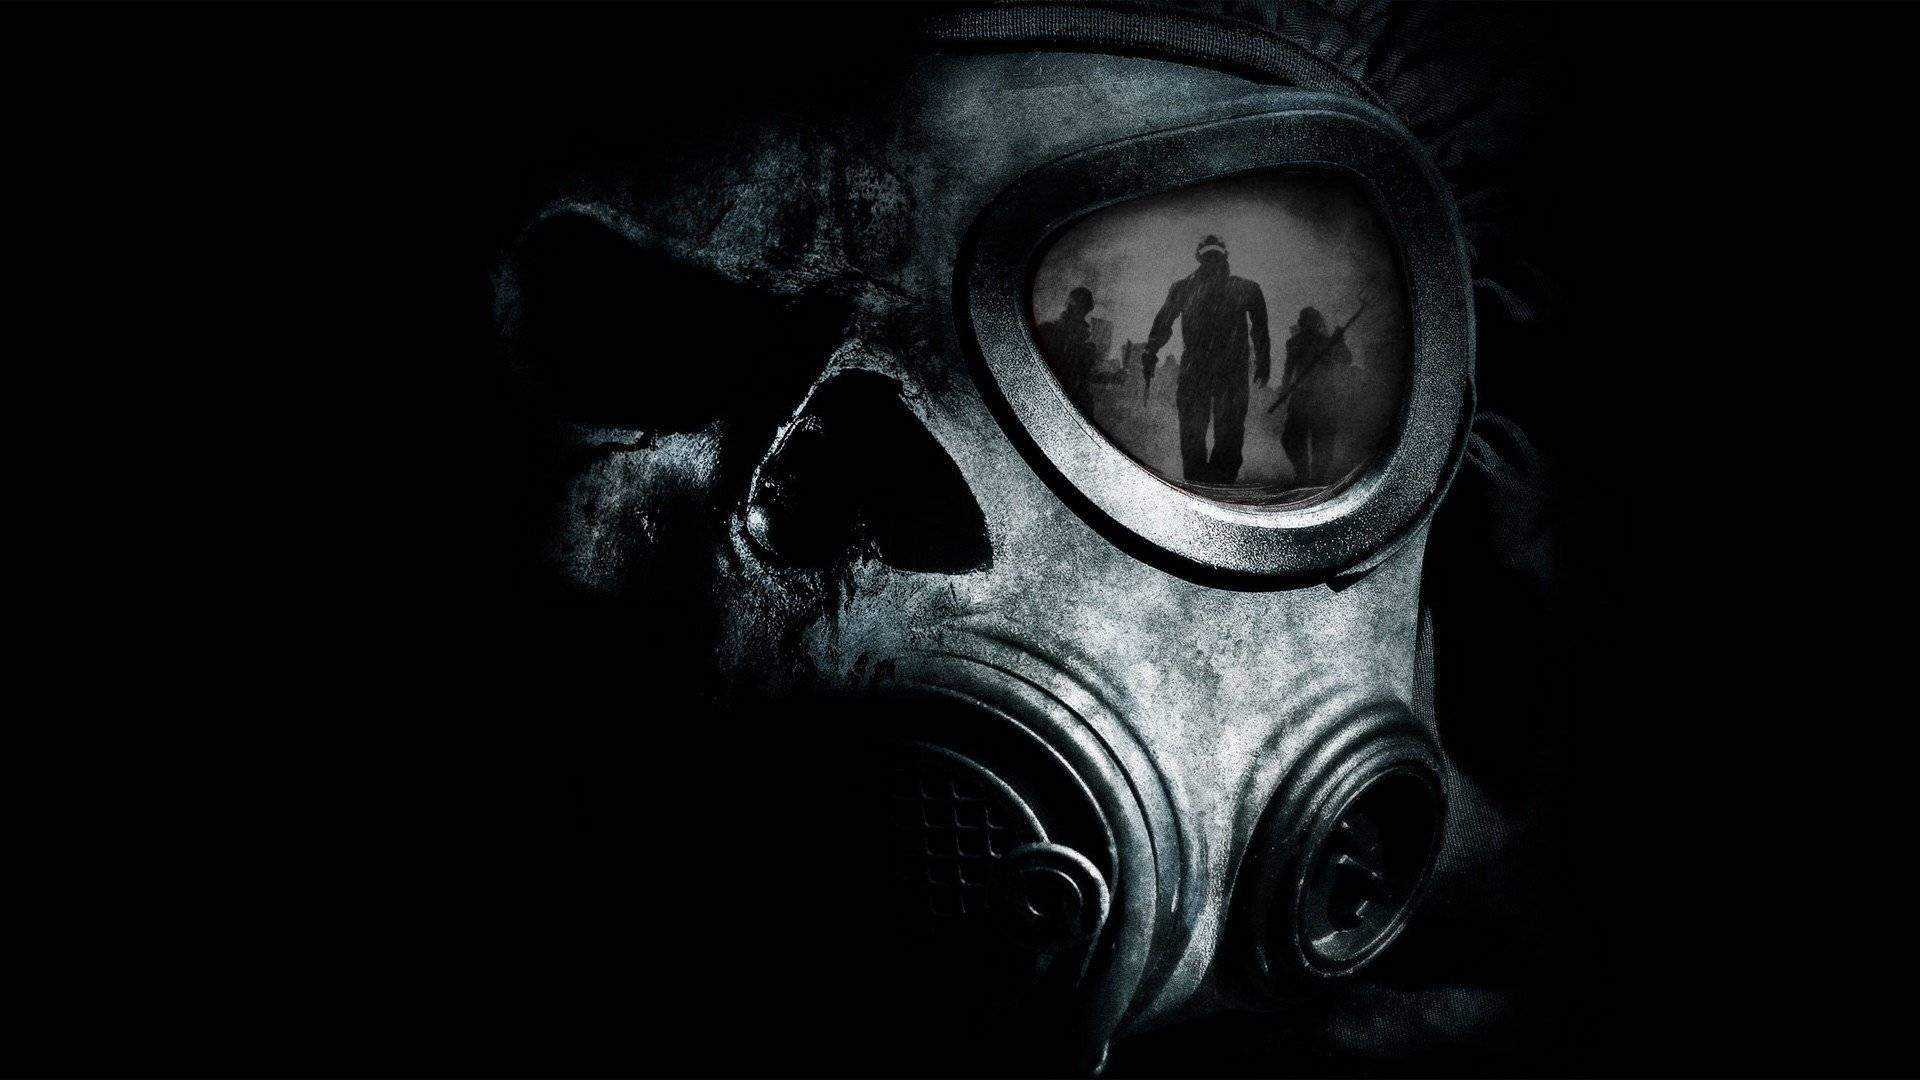 151231-mask-Black_Mask-gas_masks-apocalyptic-1.jpg